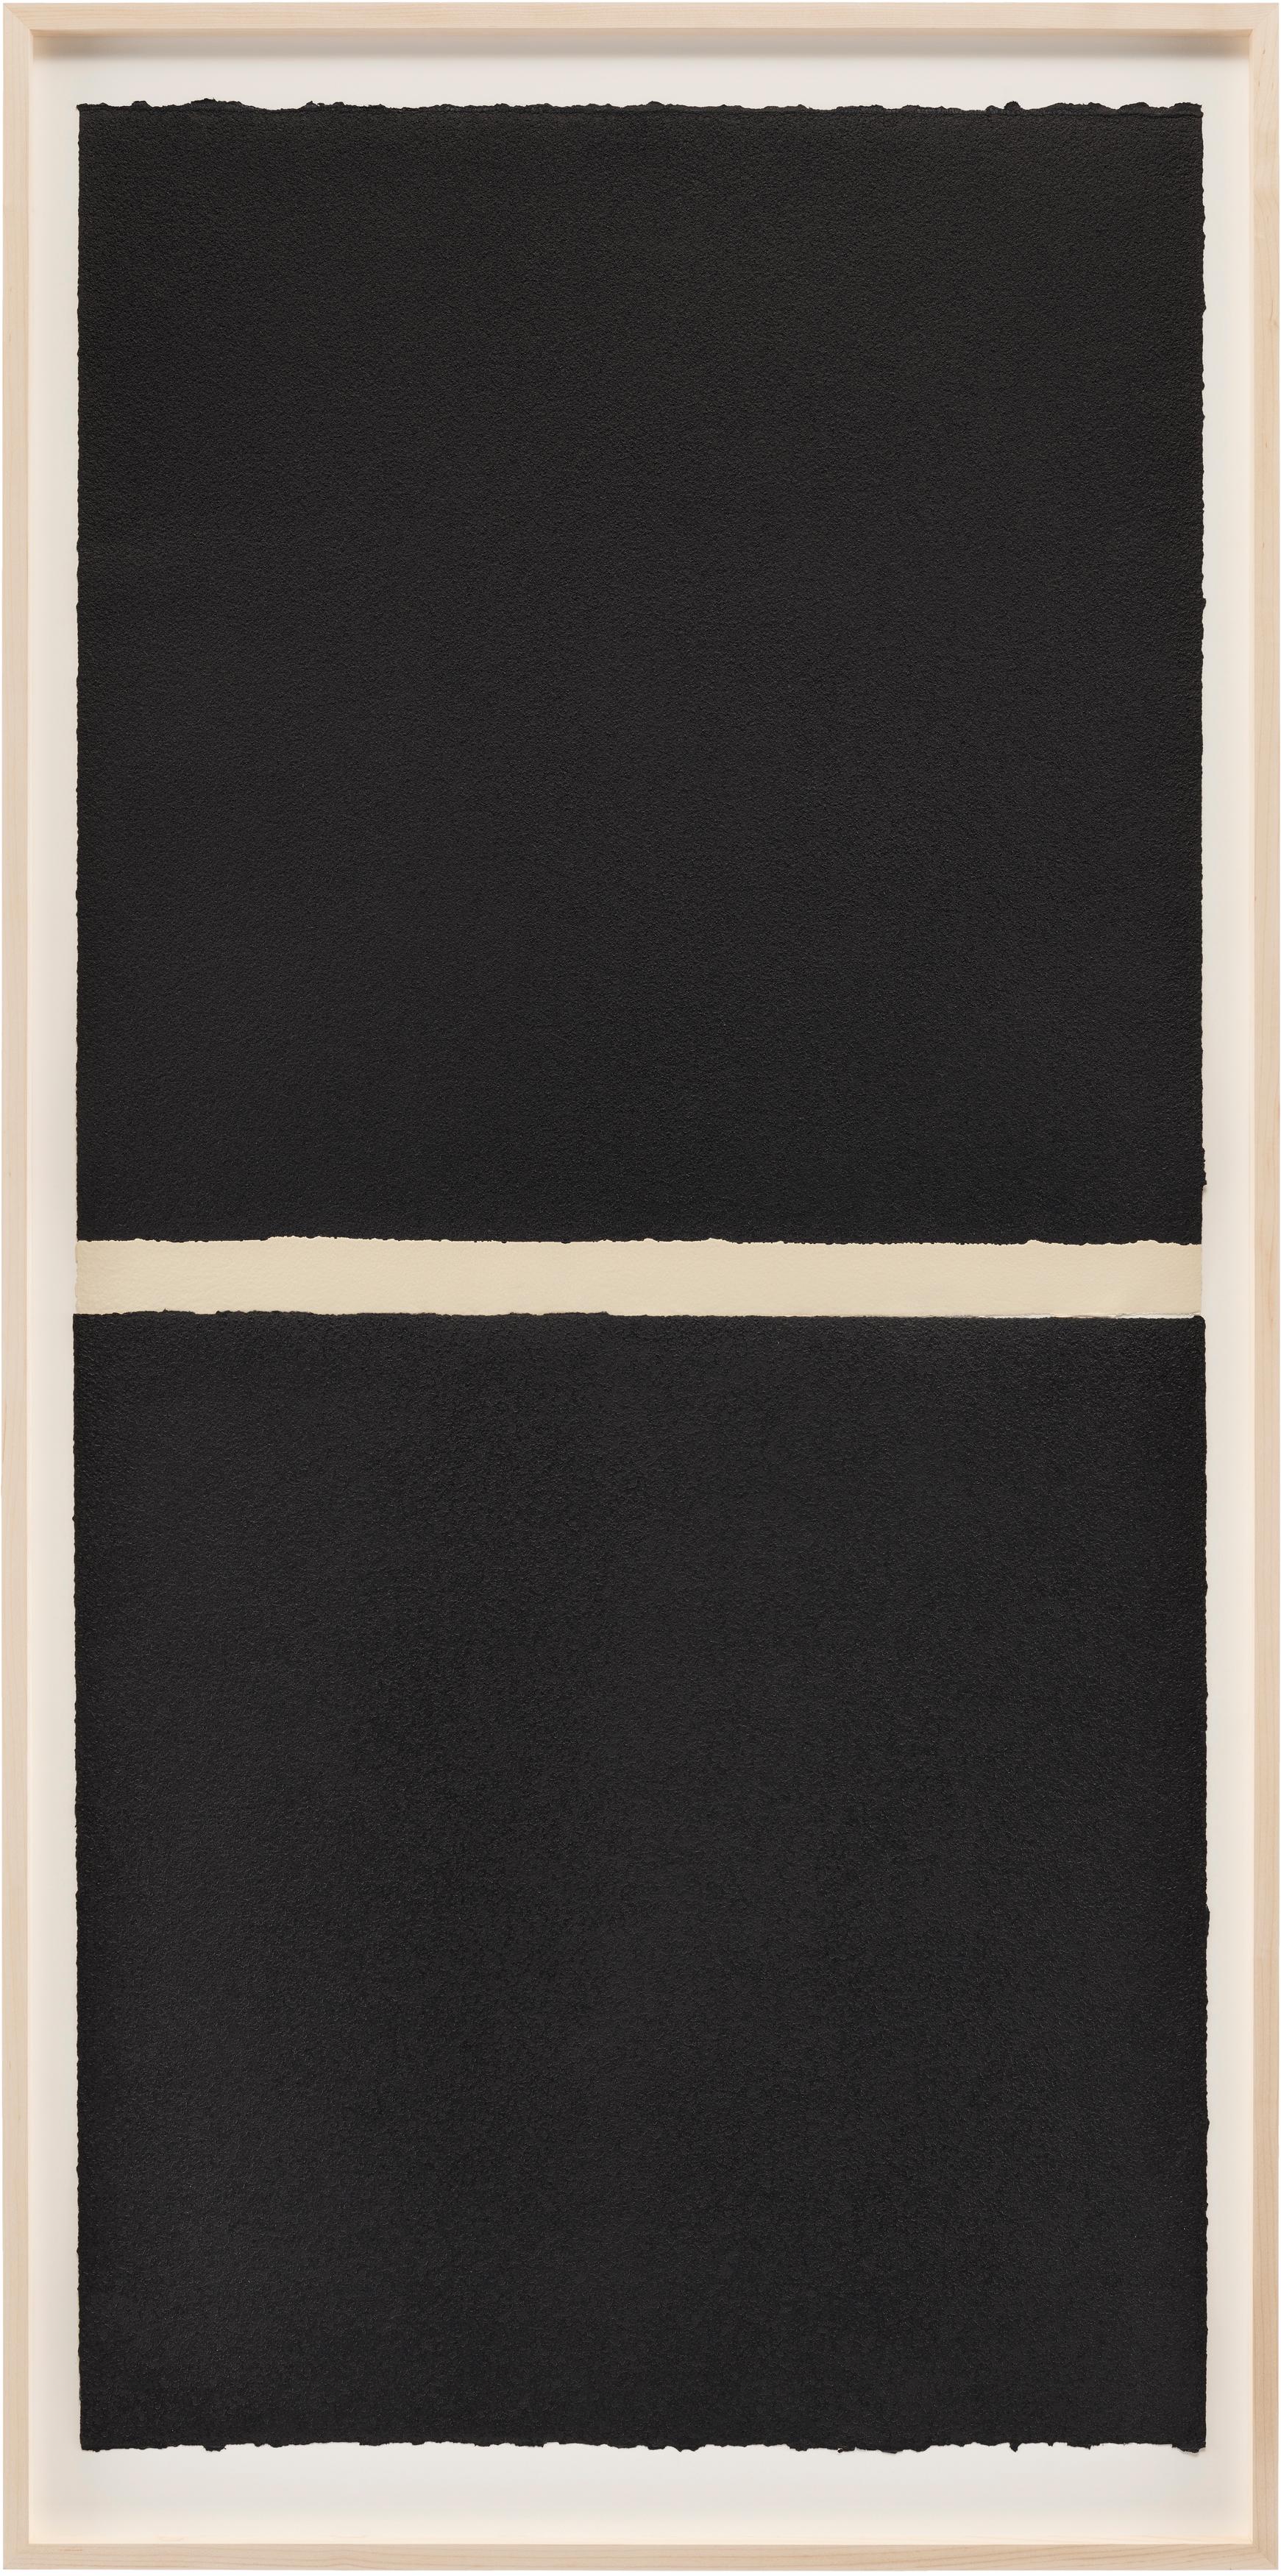 WM II (Minimalistisch), Print, von Richard Serra